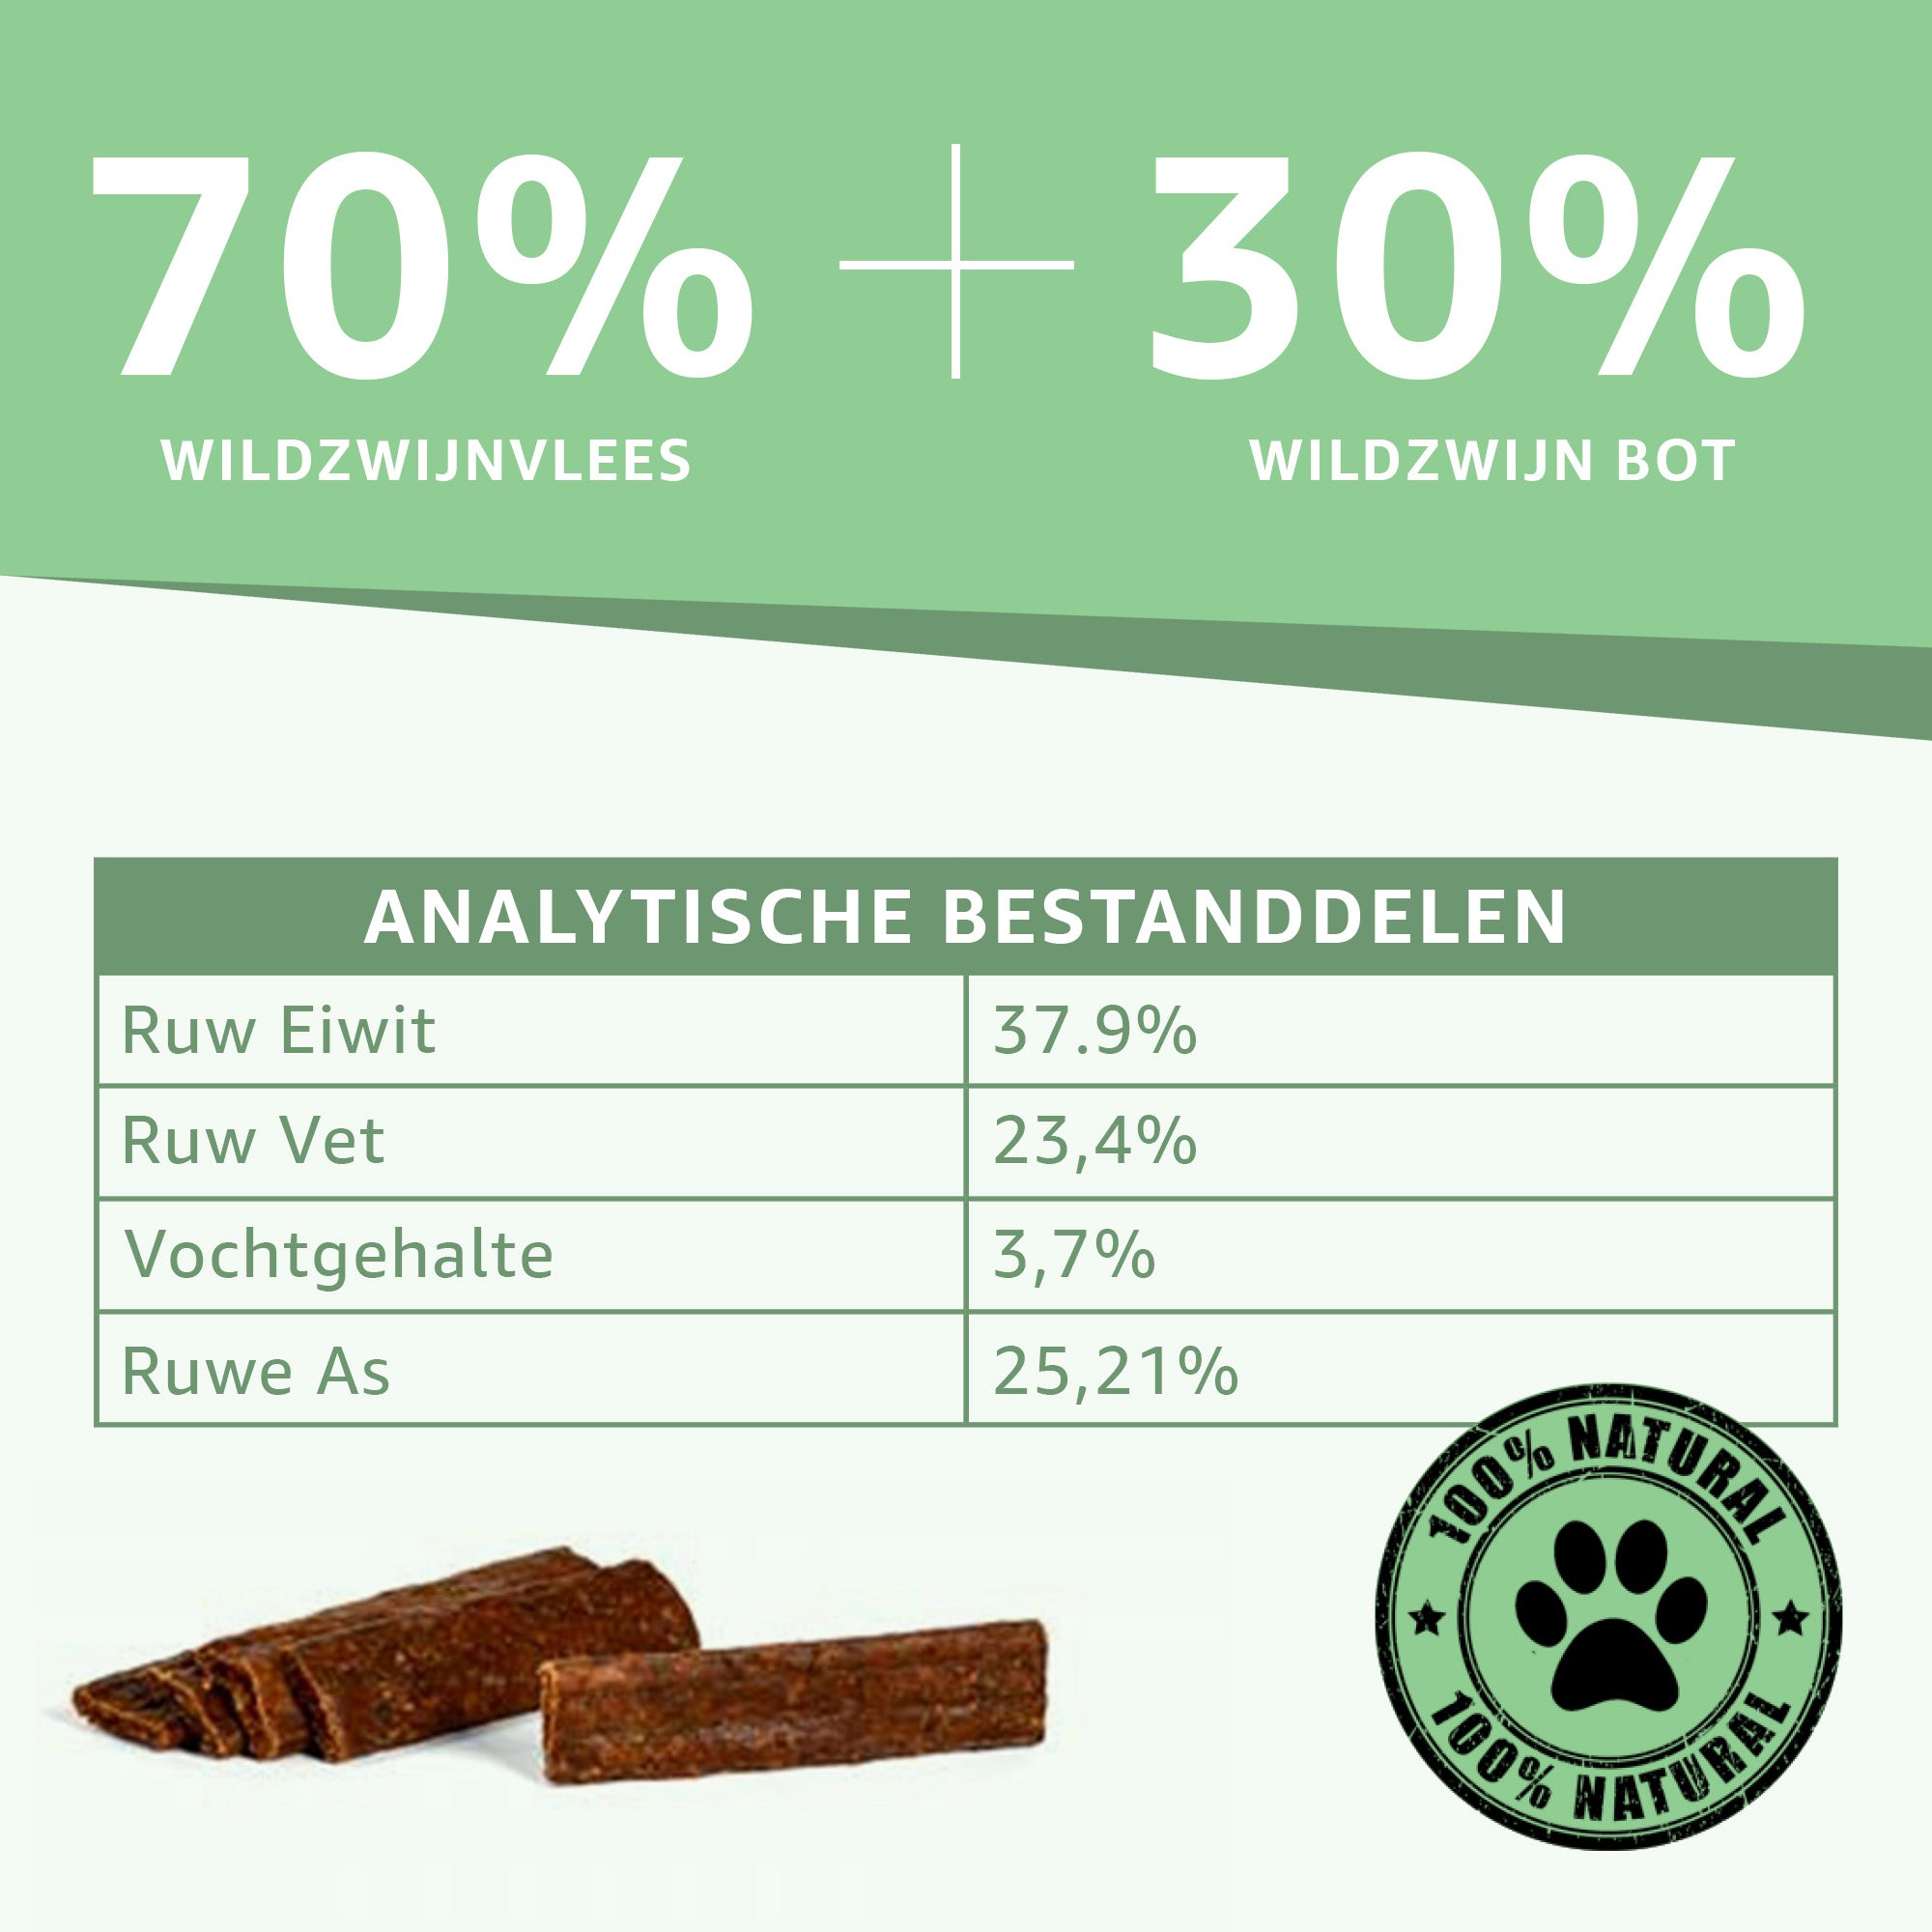 "Analytische Bestandsdelen Wildzwijn Strips: Voedingsinformatie en samenstelling onthuld. Puur wildzwijnvlees, zonder toegevoegde stoffen. Ideale keuze voor gezonde en smakelijke hondensnacks."